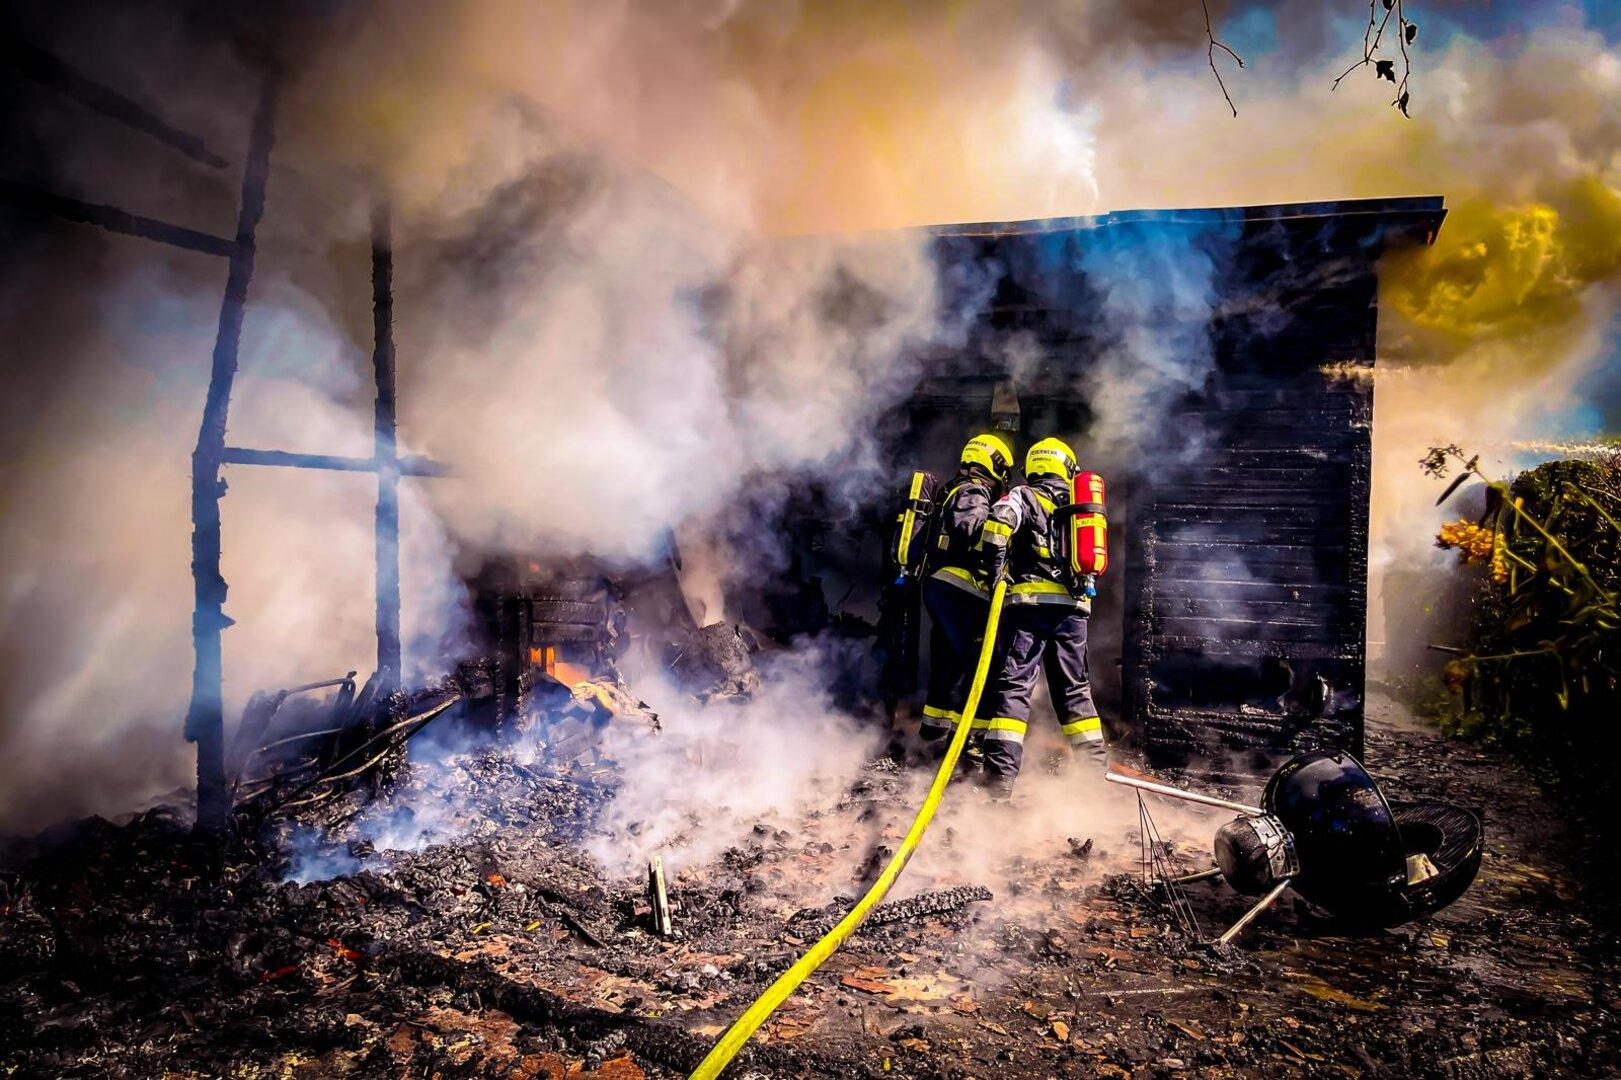 NÖ: Feuer vernichtete Wohnhaus völlig